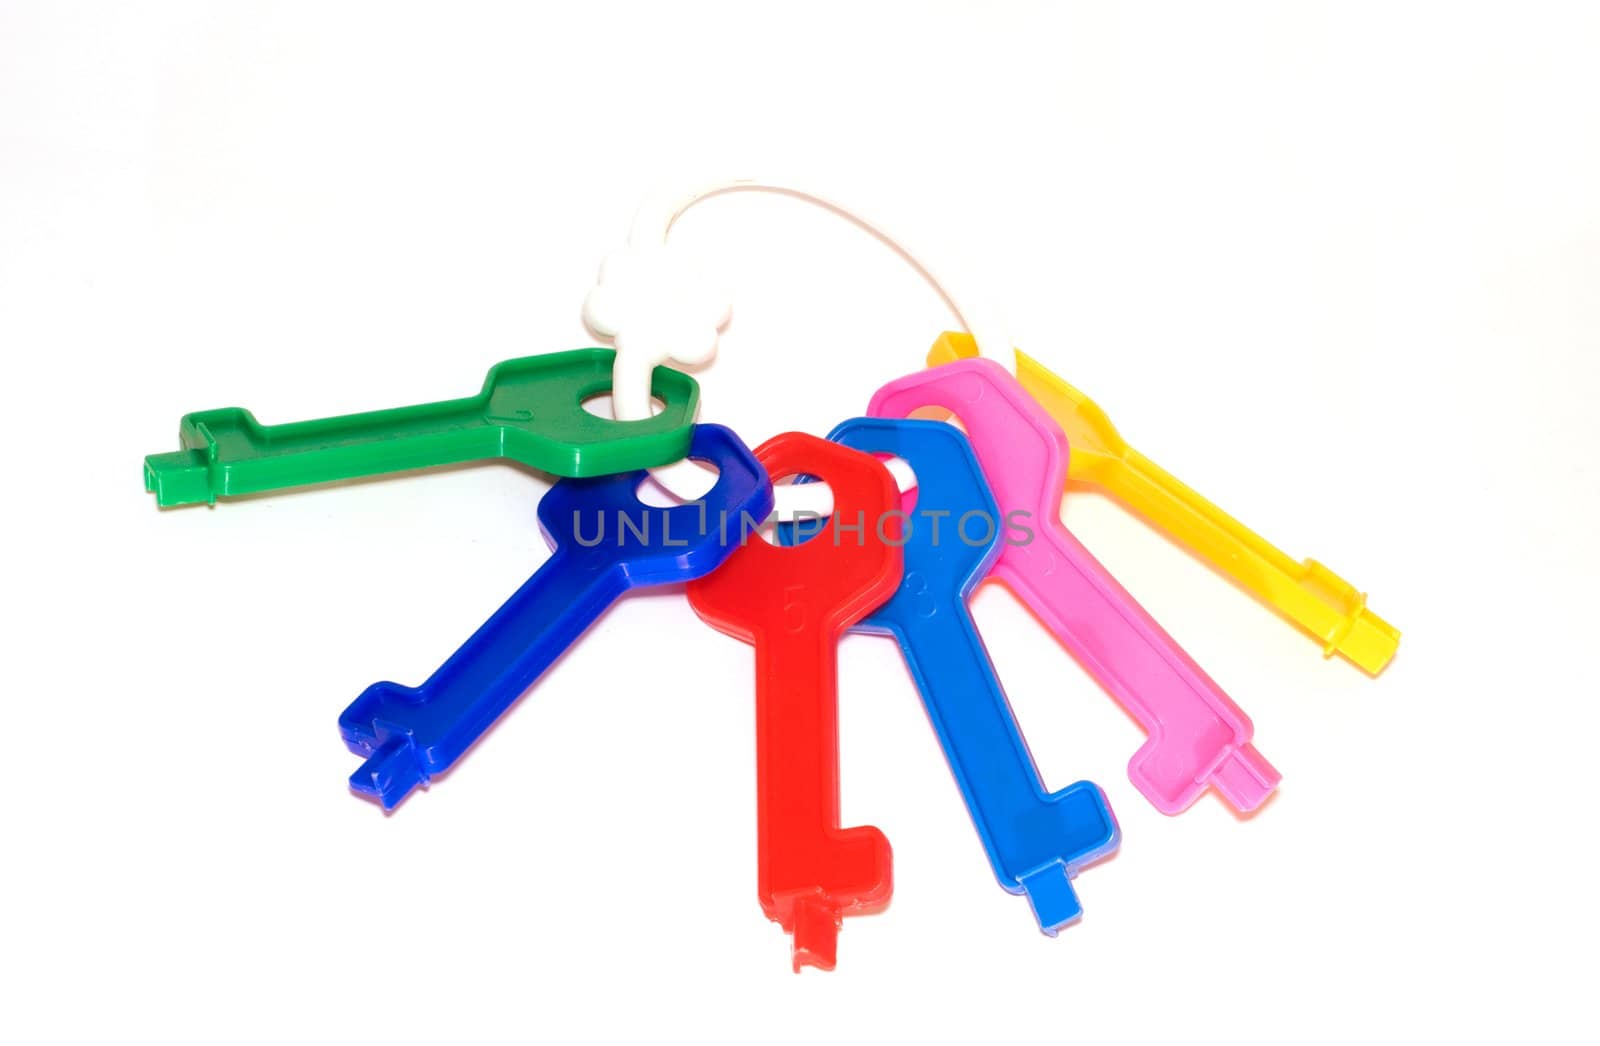 Sheaf of toy multi-coloured keys by mafffutochka